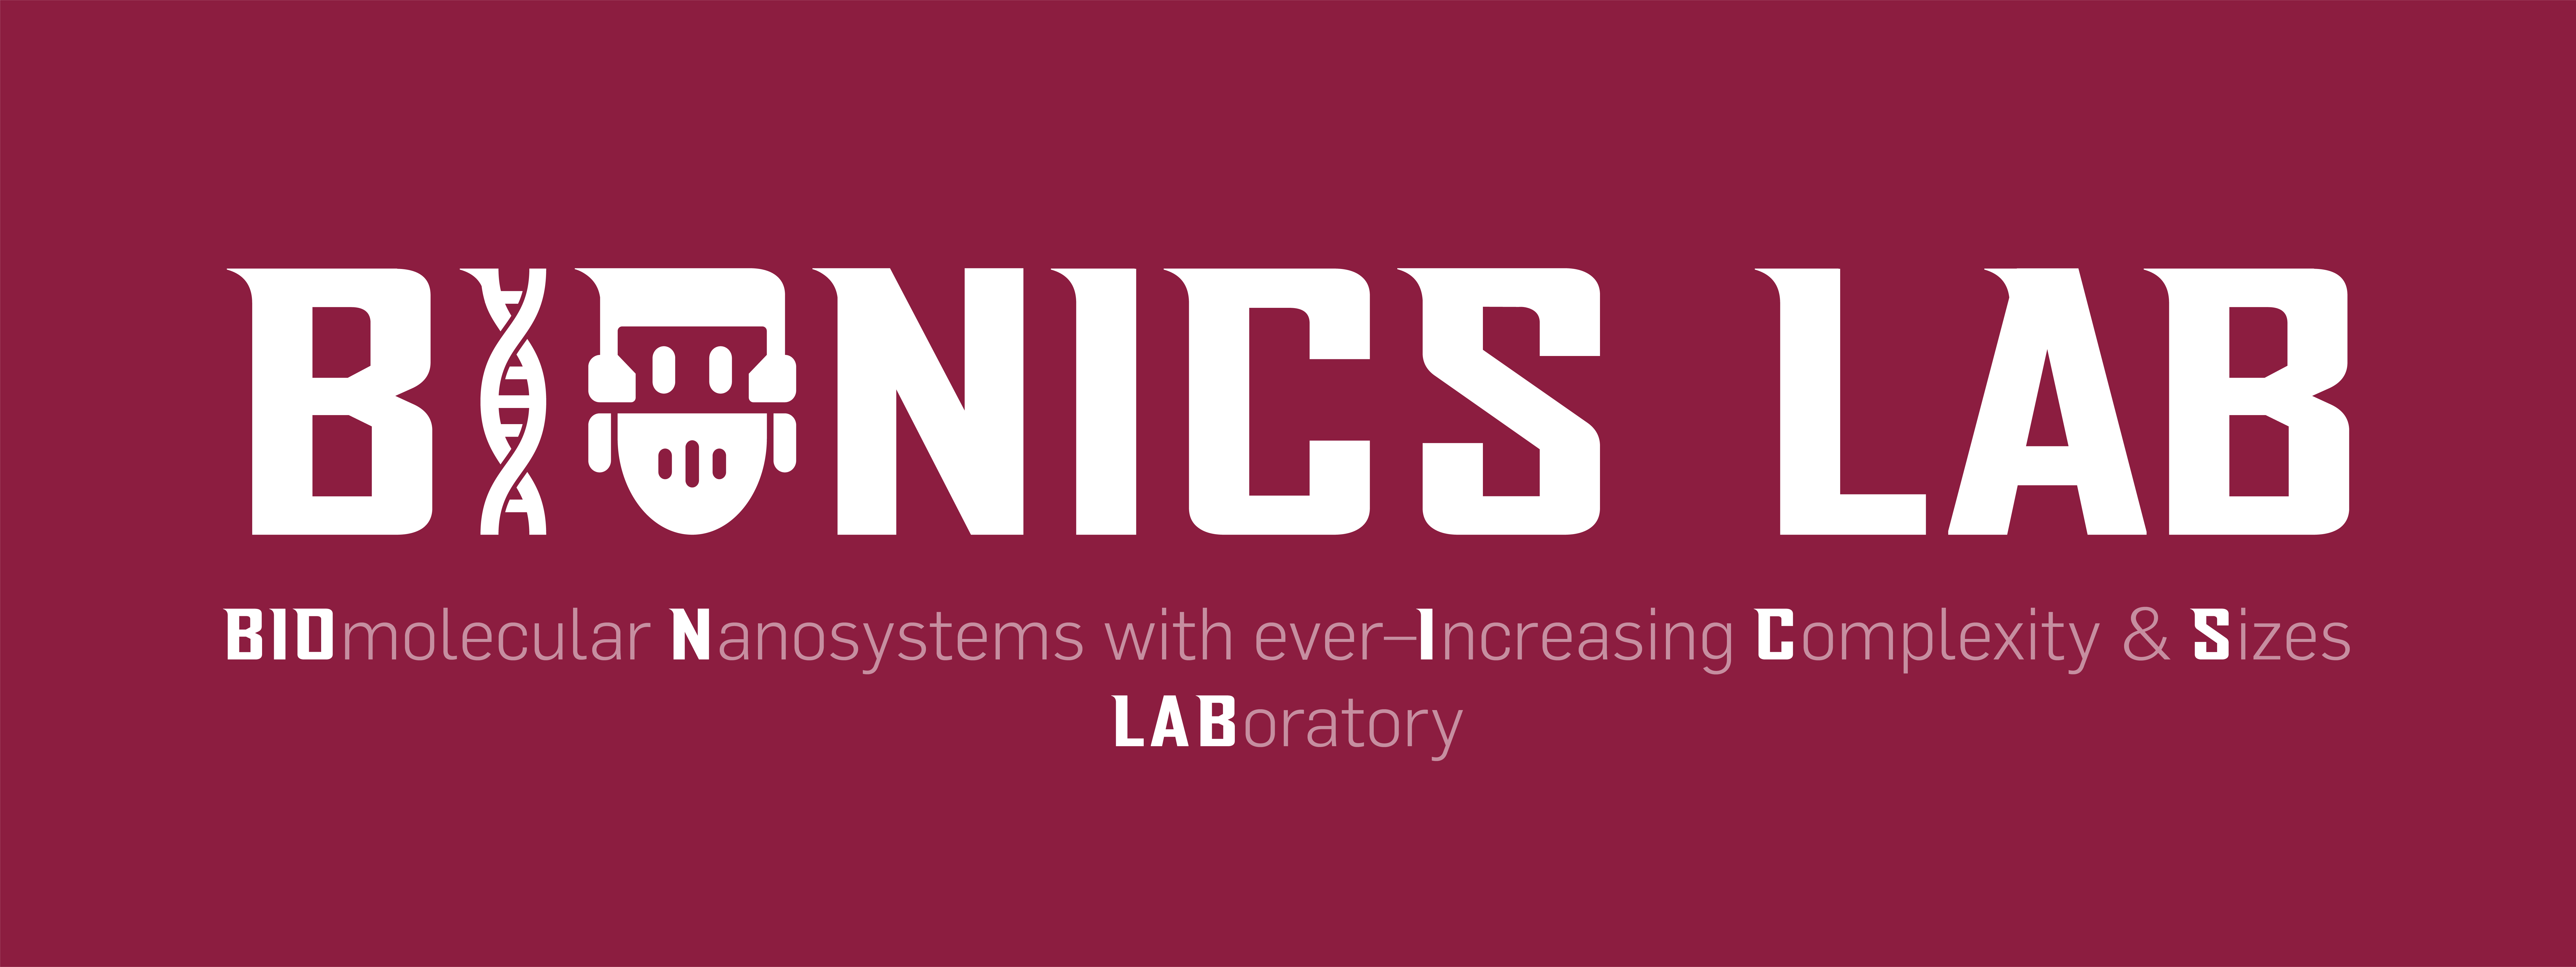 Bionics Lab Logo.png